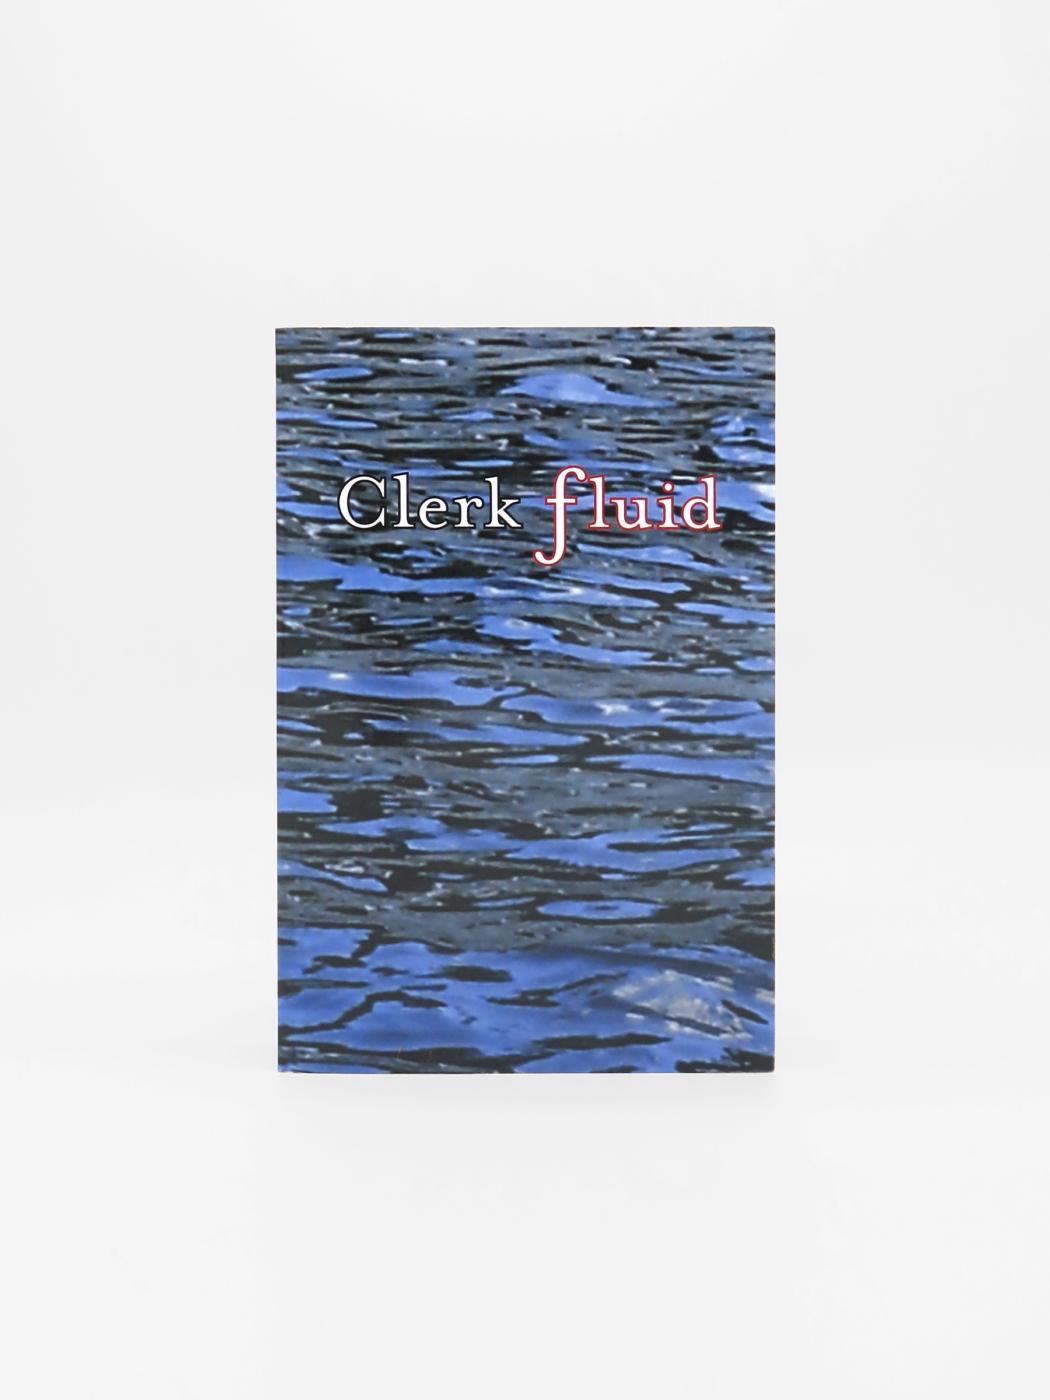 Mark Flood / Clark Flood, Clerk Fluid